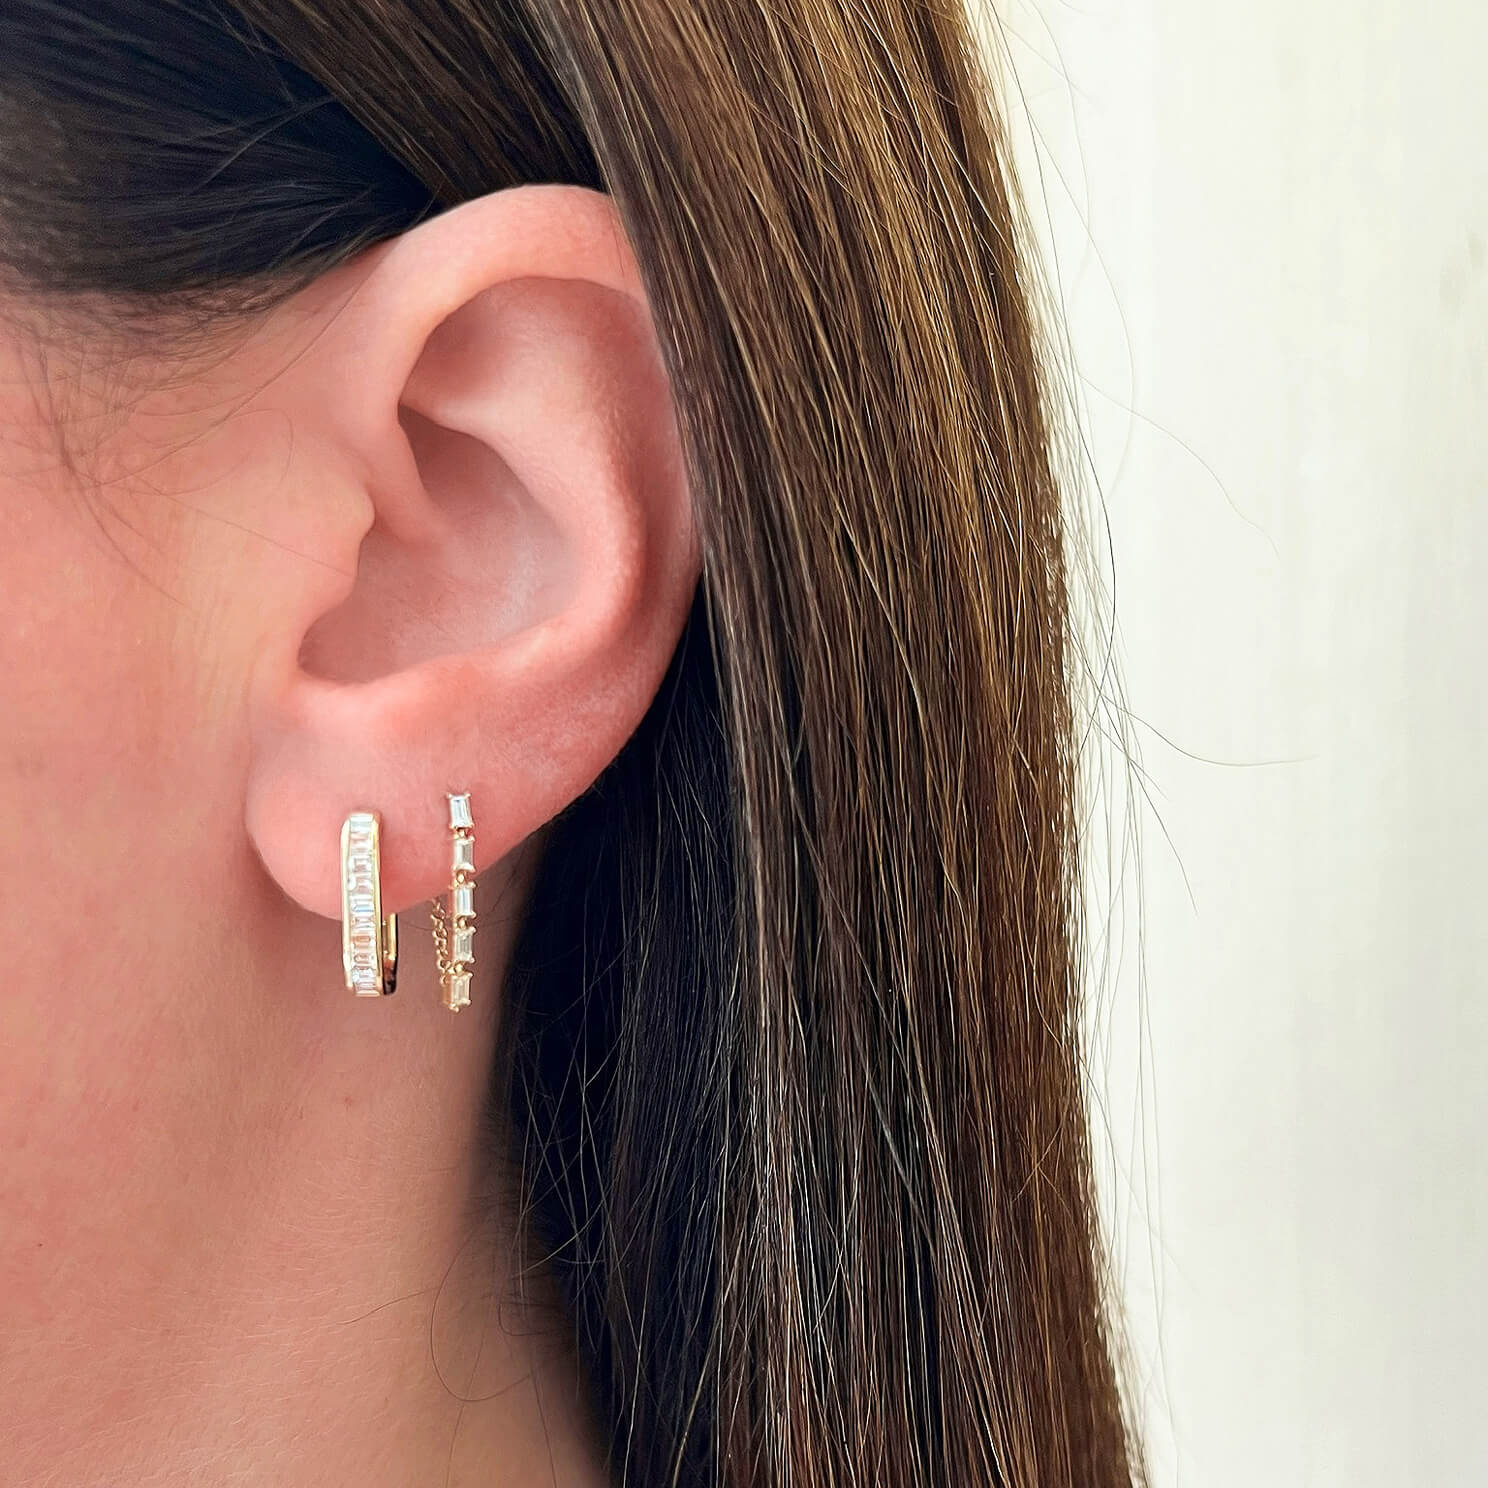 Multi Diamond Baguette Chain Stud Earring in 14k yellow gold styled on ear lobe of model in second piercing hole